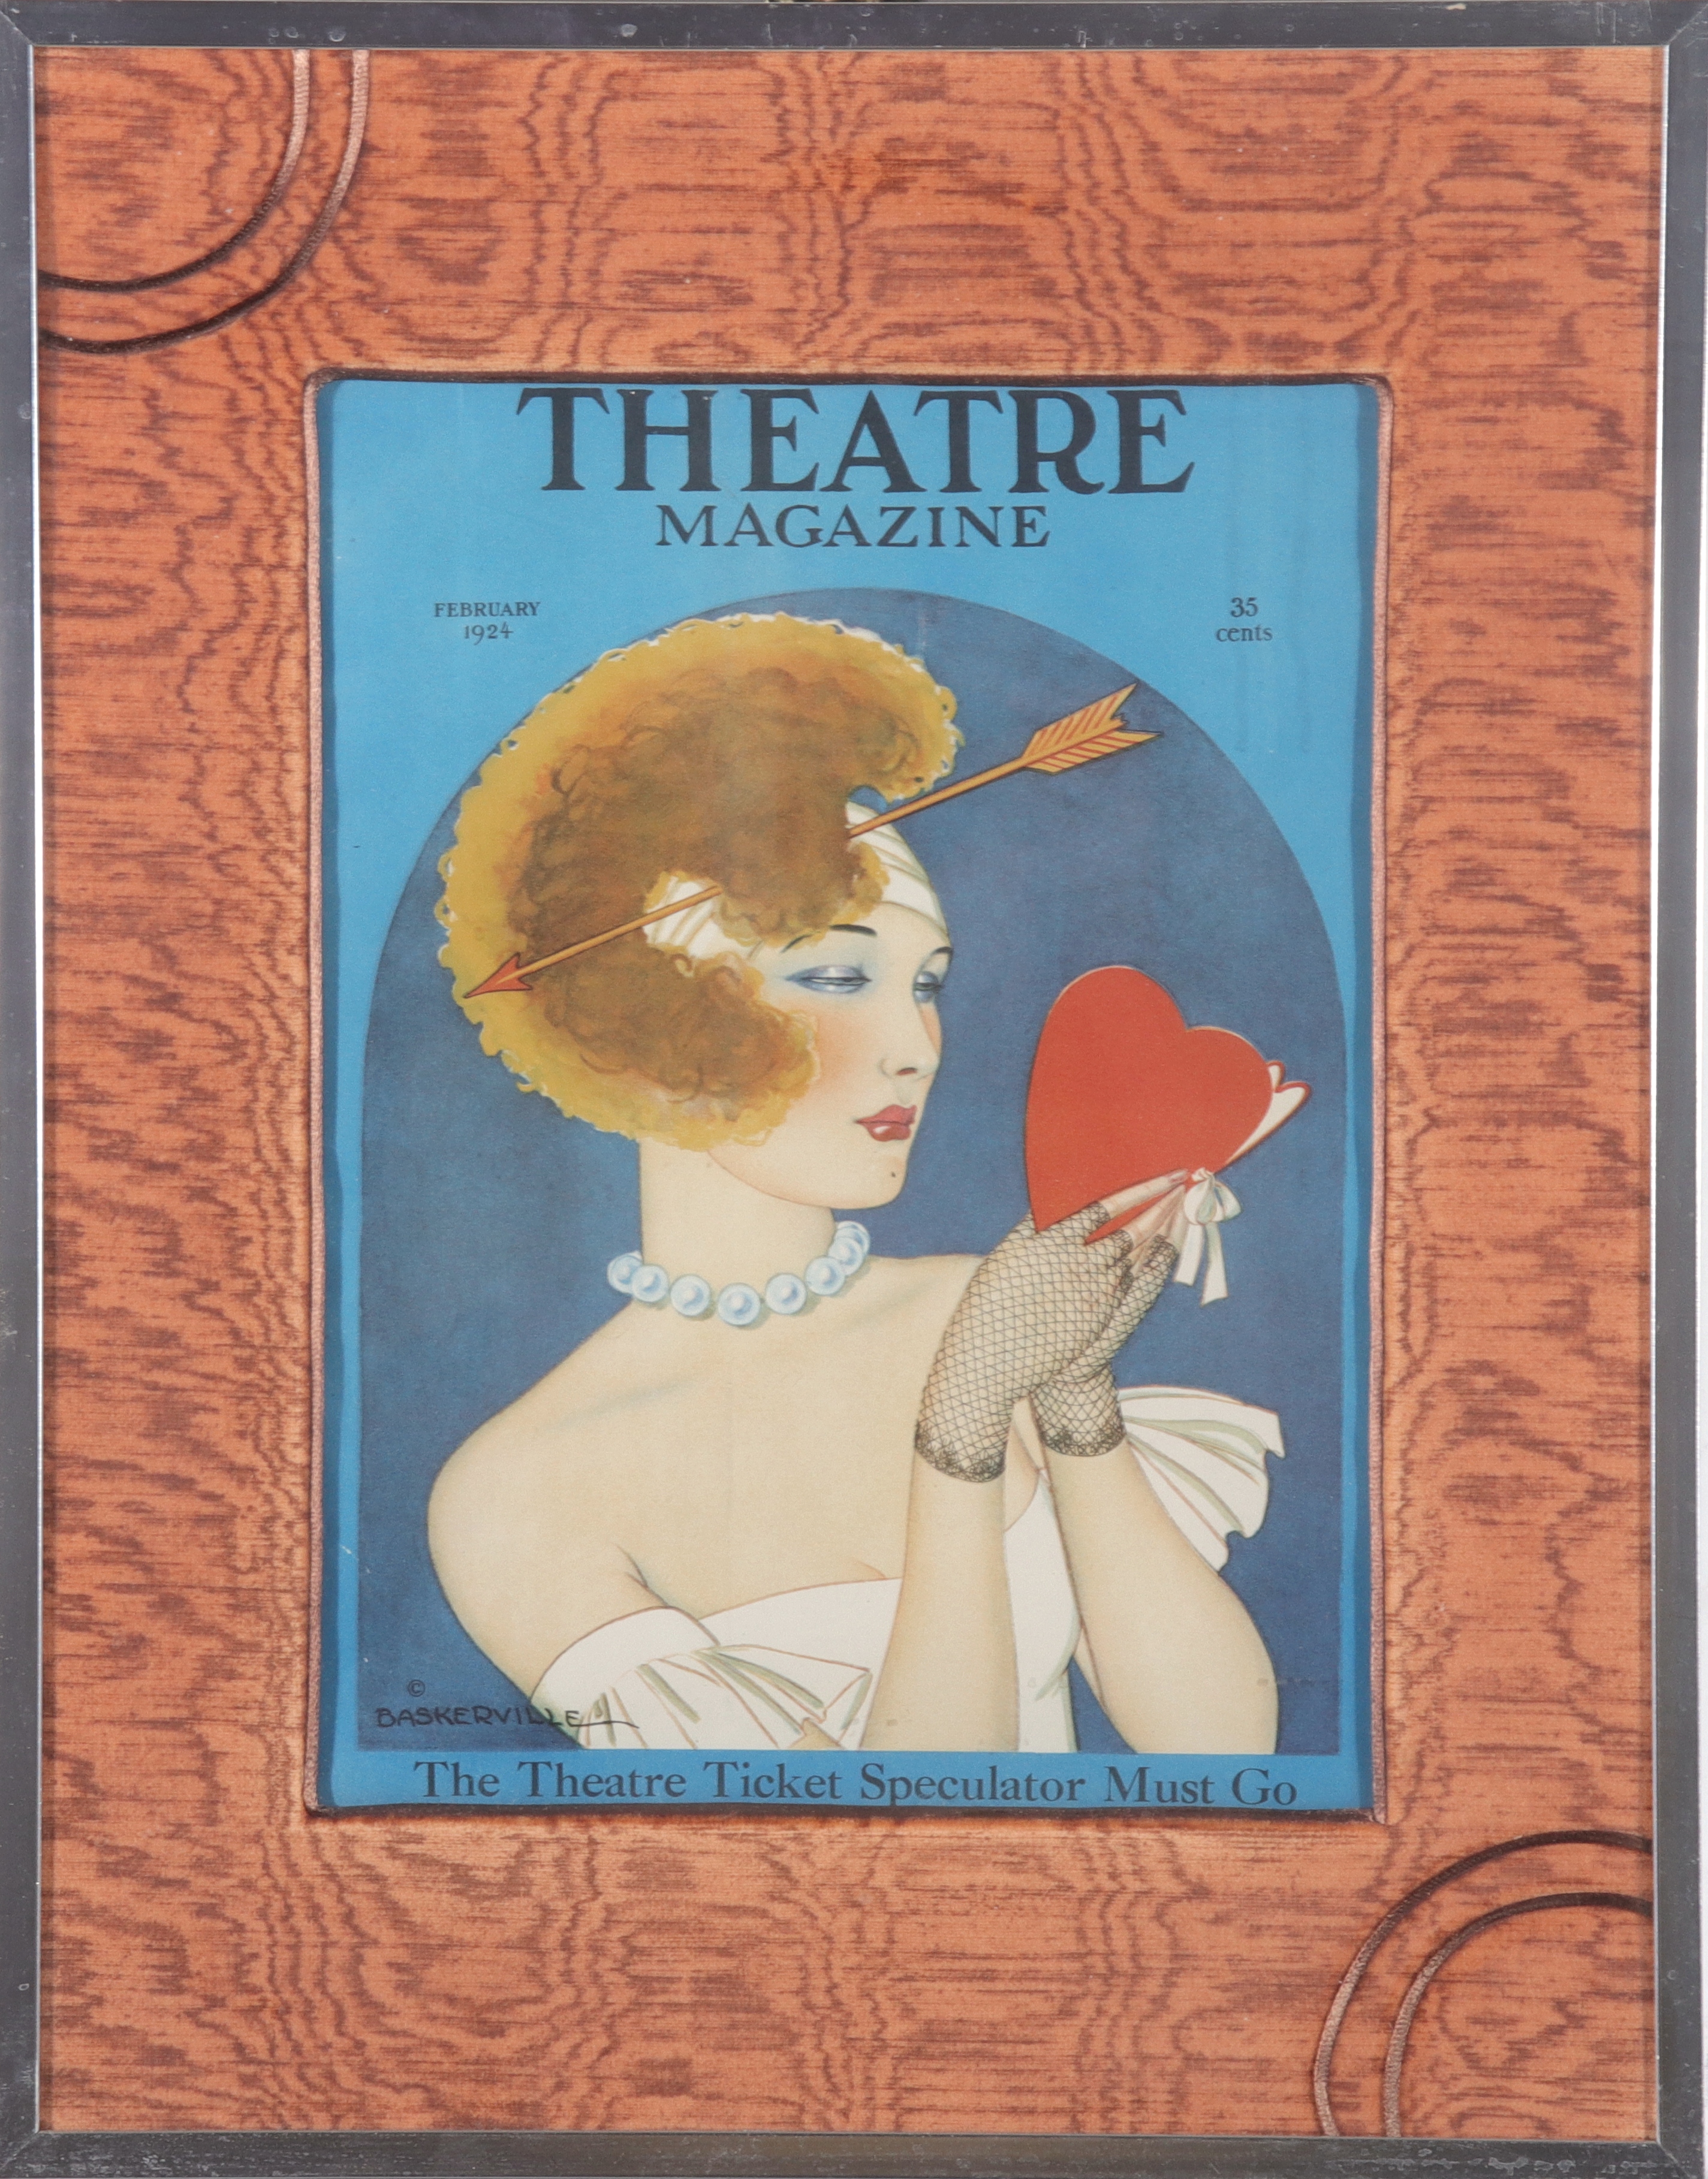 THEATRE MAGAZINE FEB. 1924 COVER